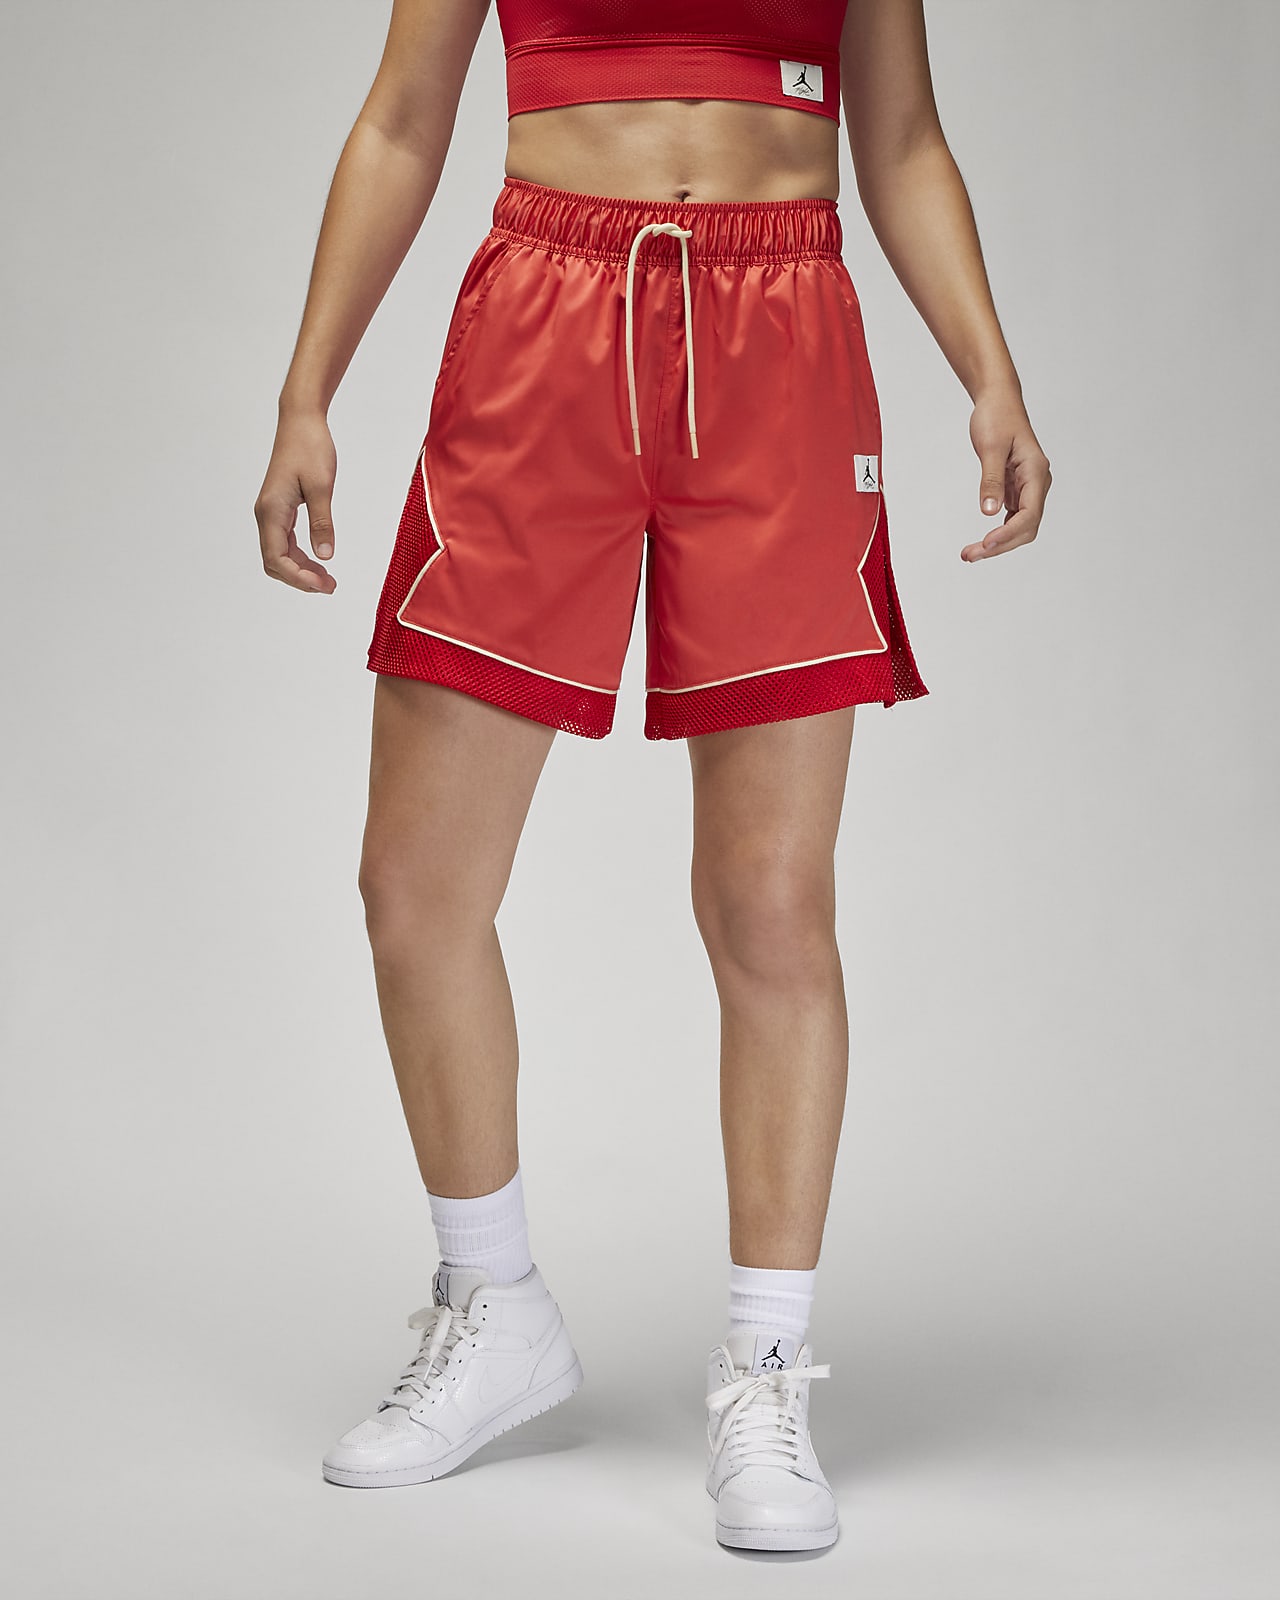 pescado difícil complemento Jordan Essentials Pantalón corto Diamond - Mujer. Nike ES